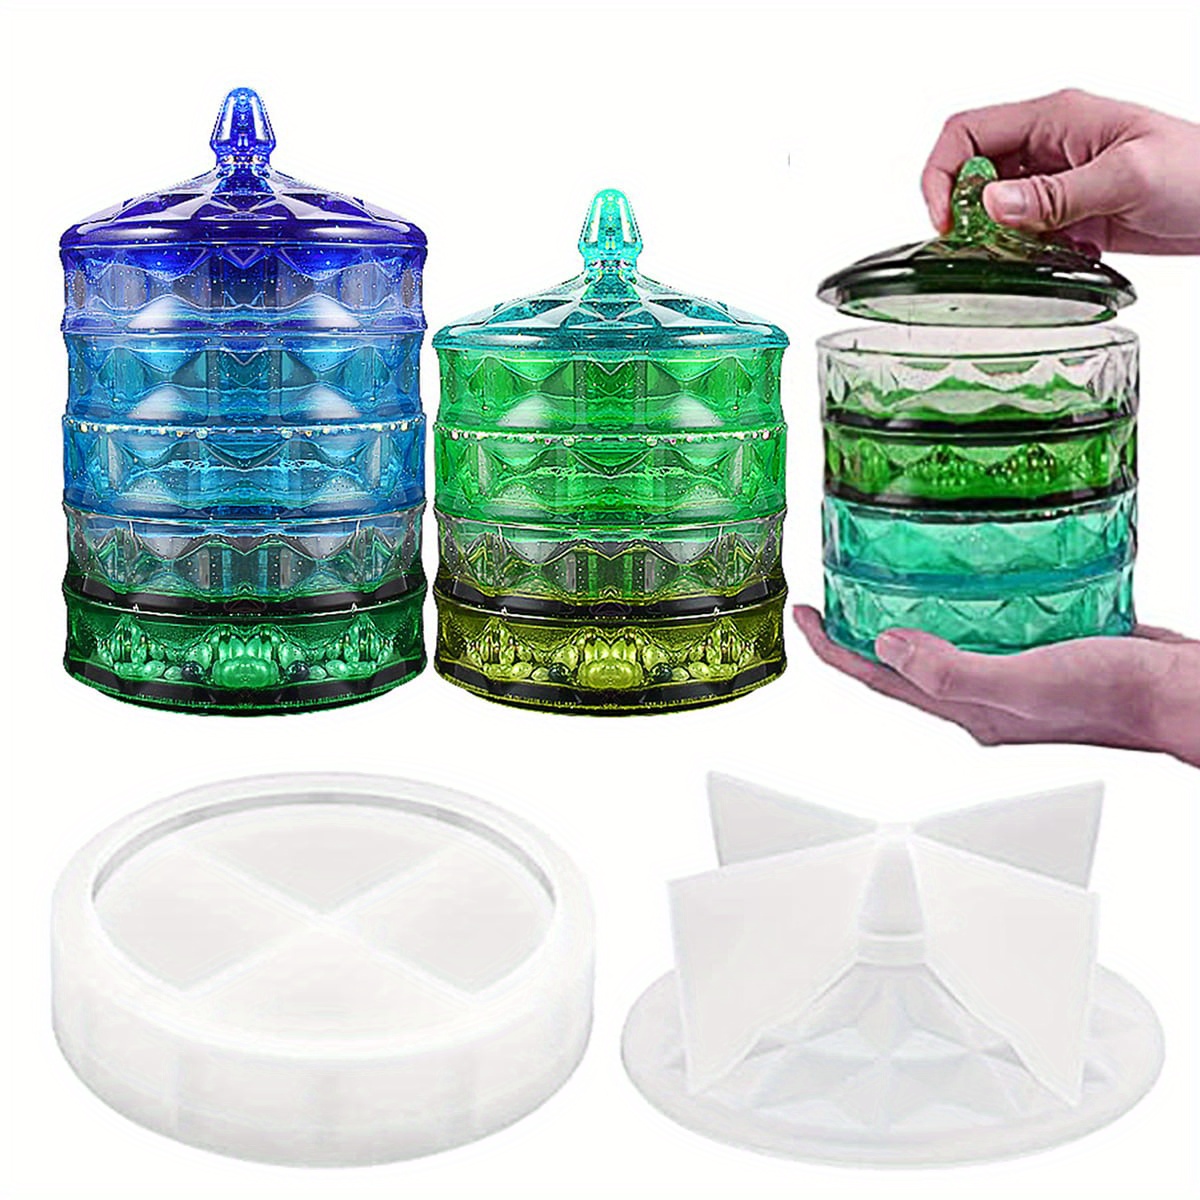 Green Glass Bathroom Storage Jar